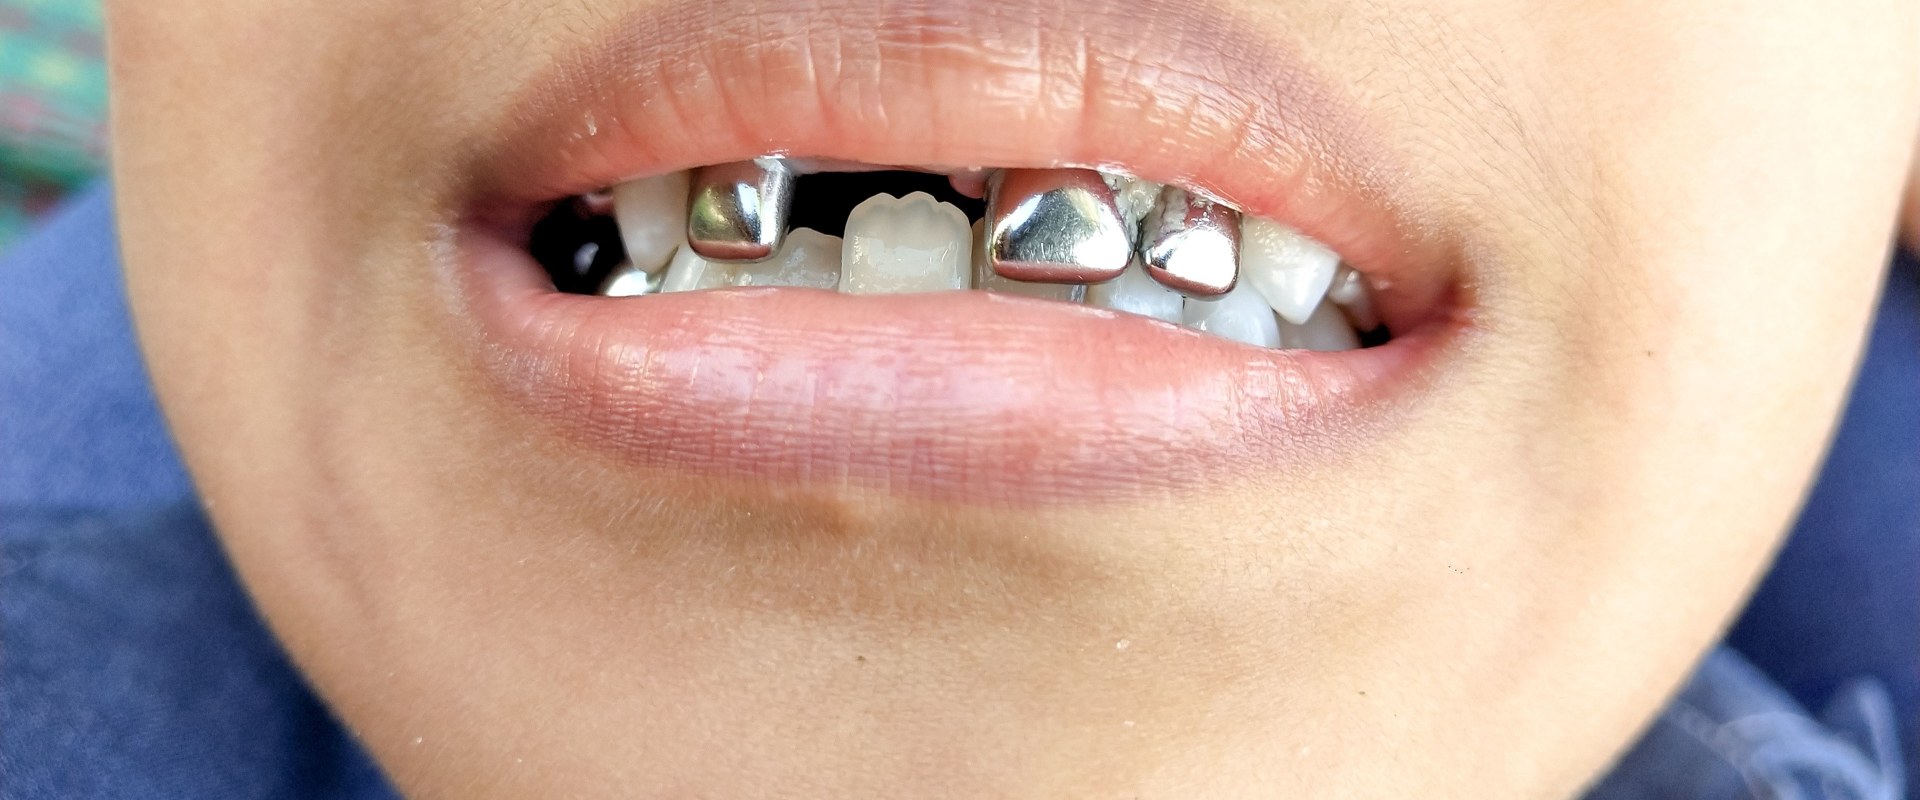 How long do caps on baby teeth last?